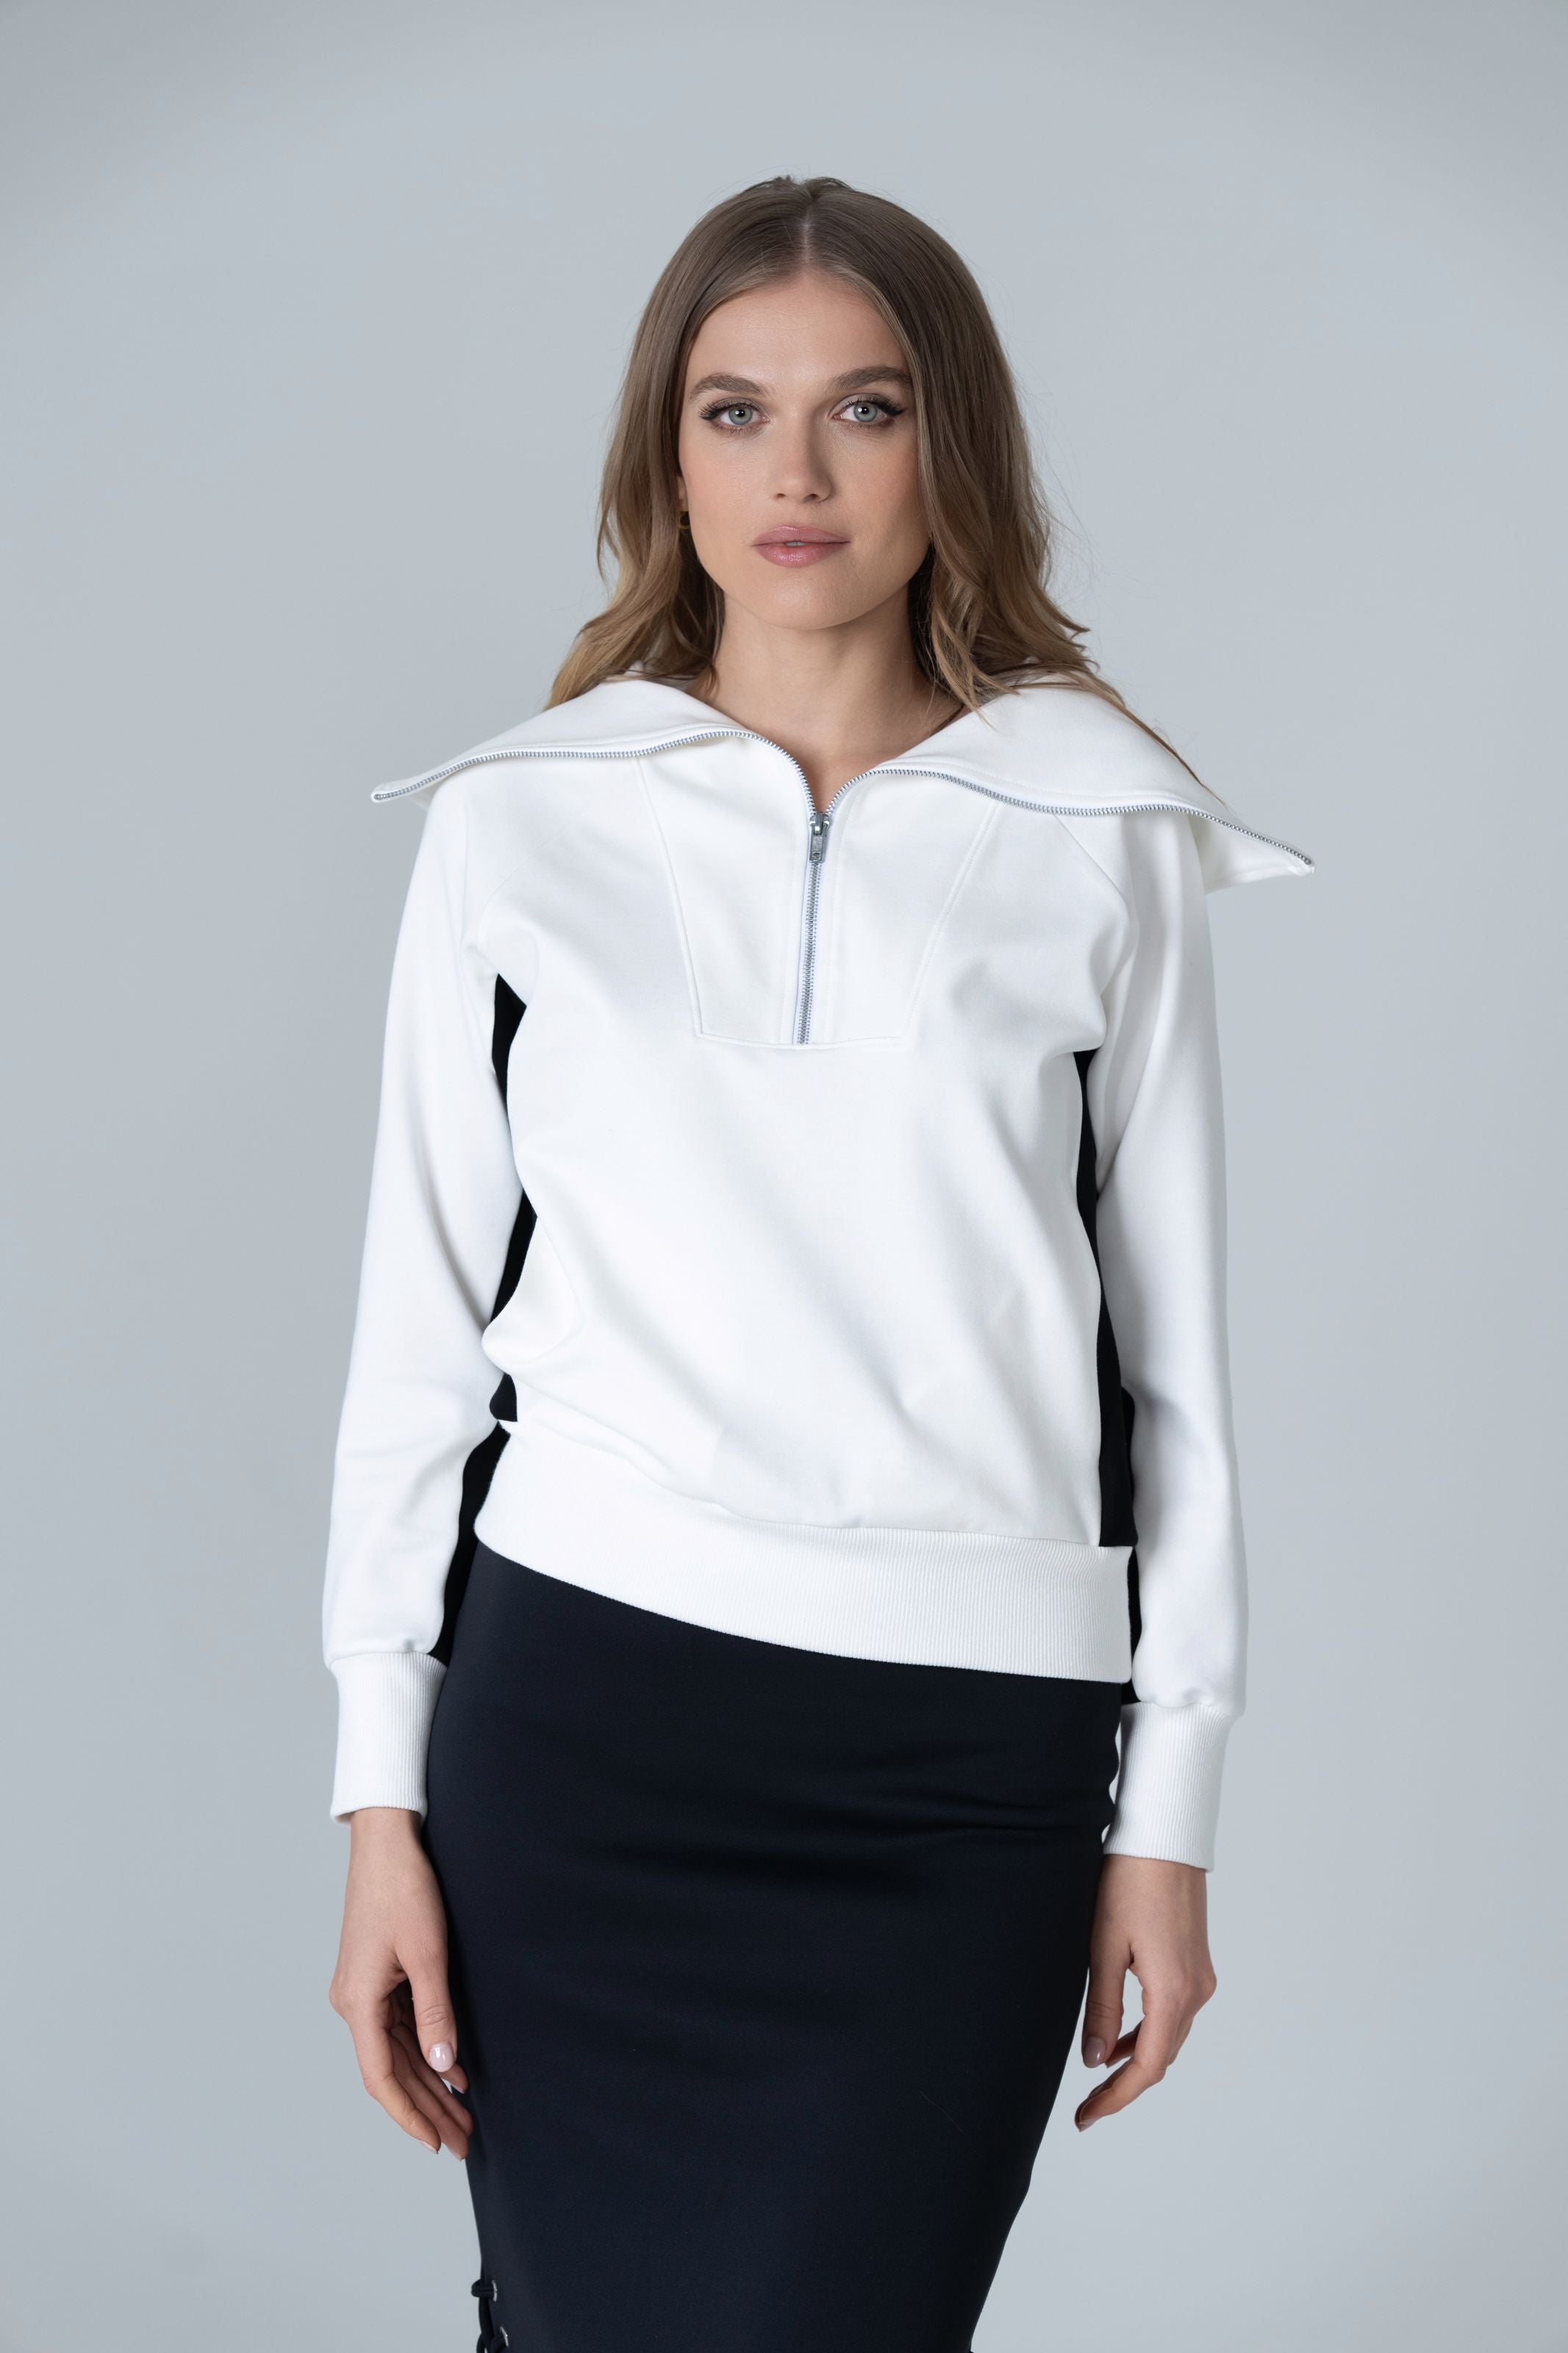 Anna Pullover Zipper Sweater - White and Black - Olivvi World